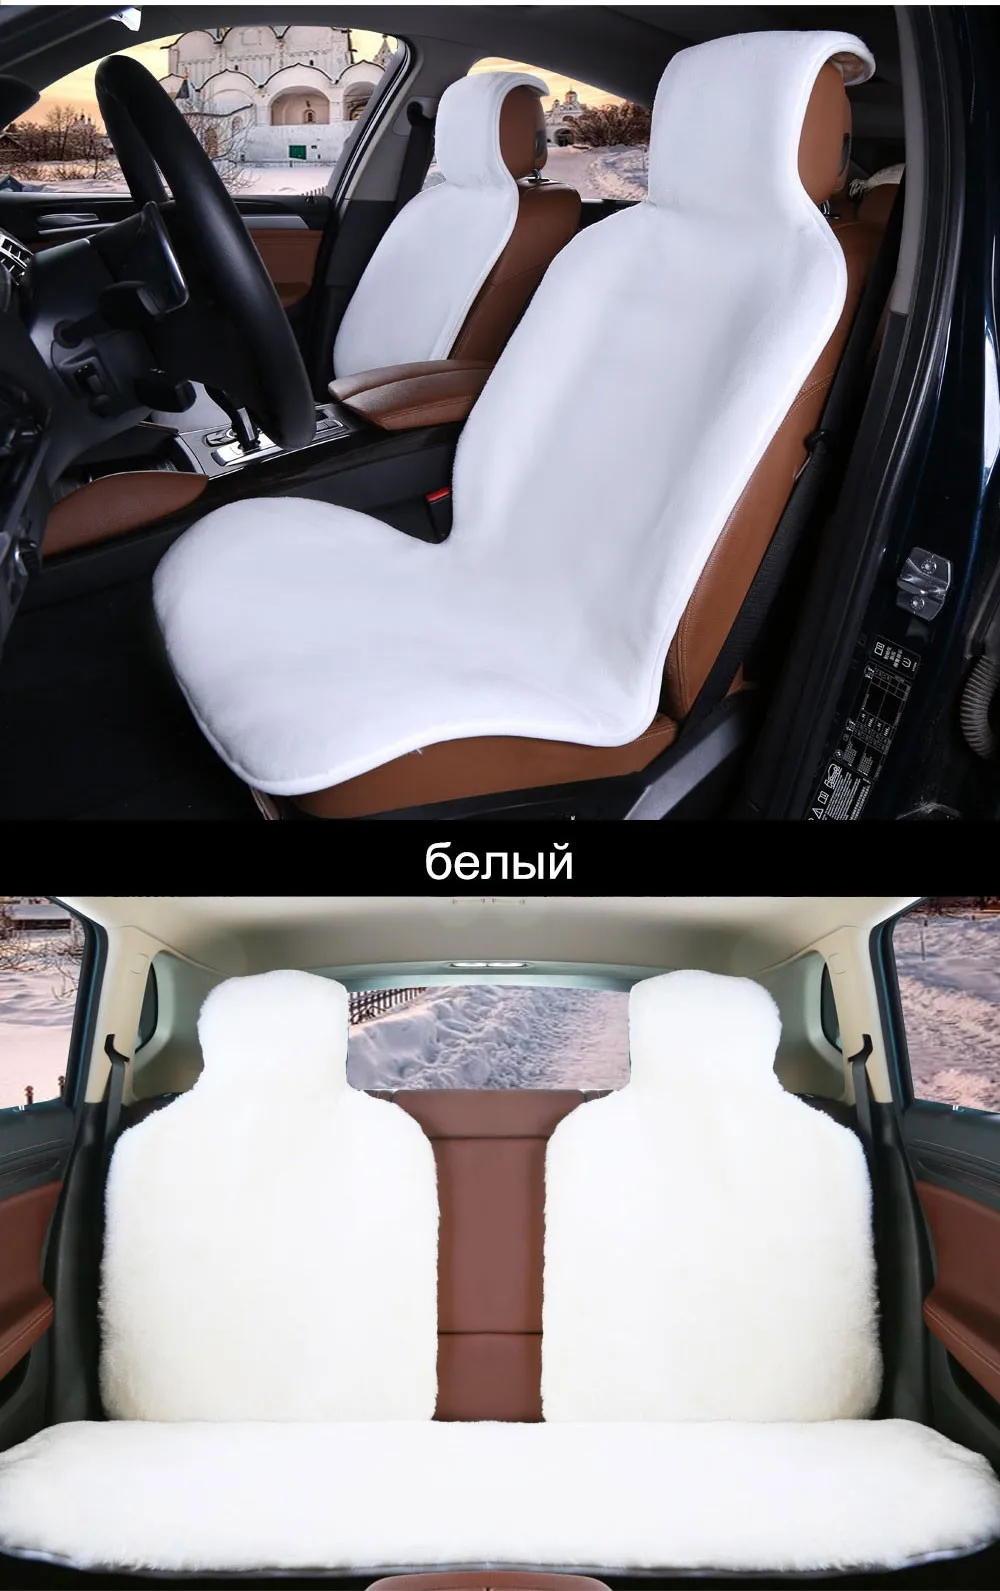 Rownfur натуральный мех австралийской овчины сиденье автомобиля охватывает универсальный размер для черный сиденья аксессуары автомобили